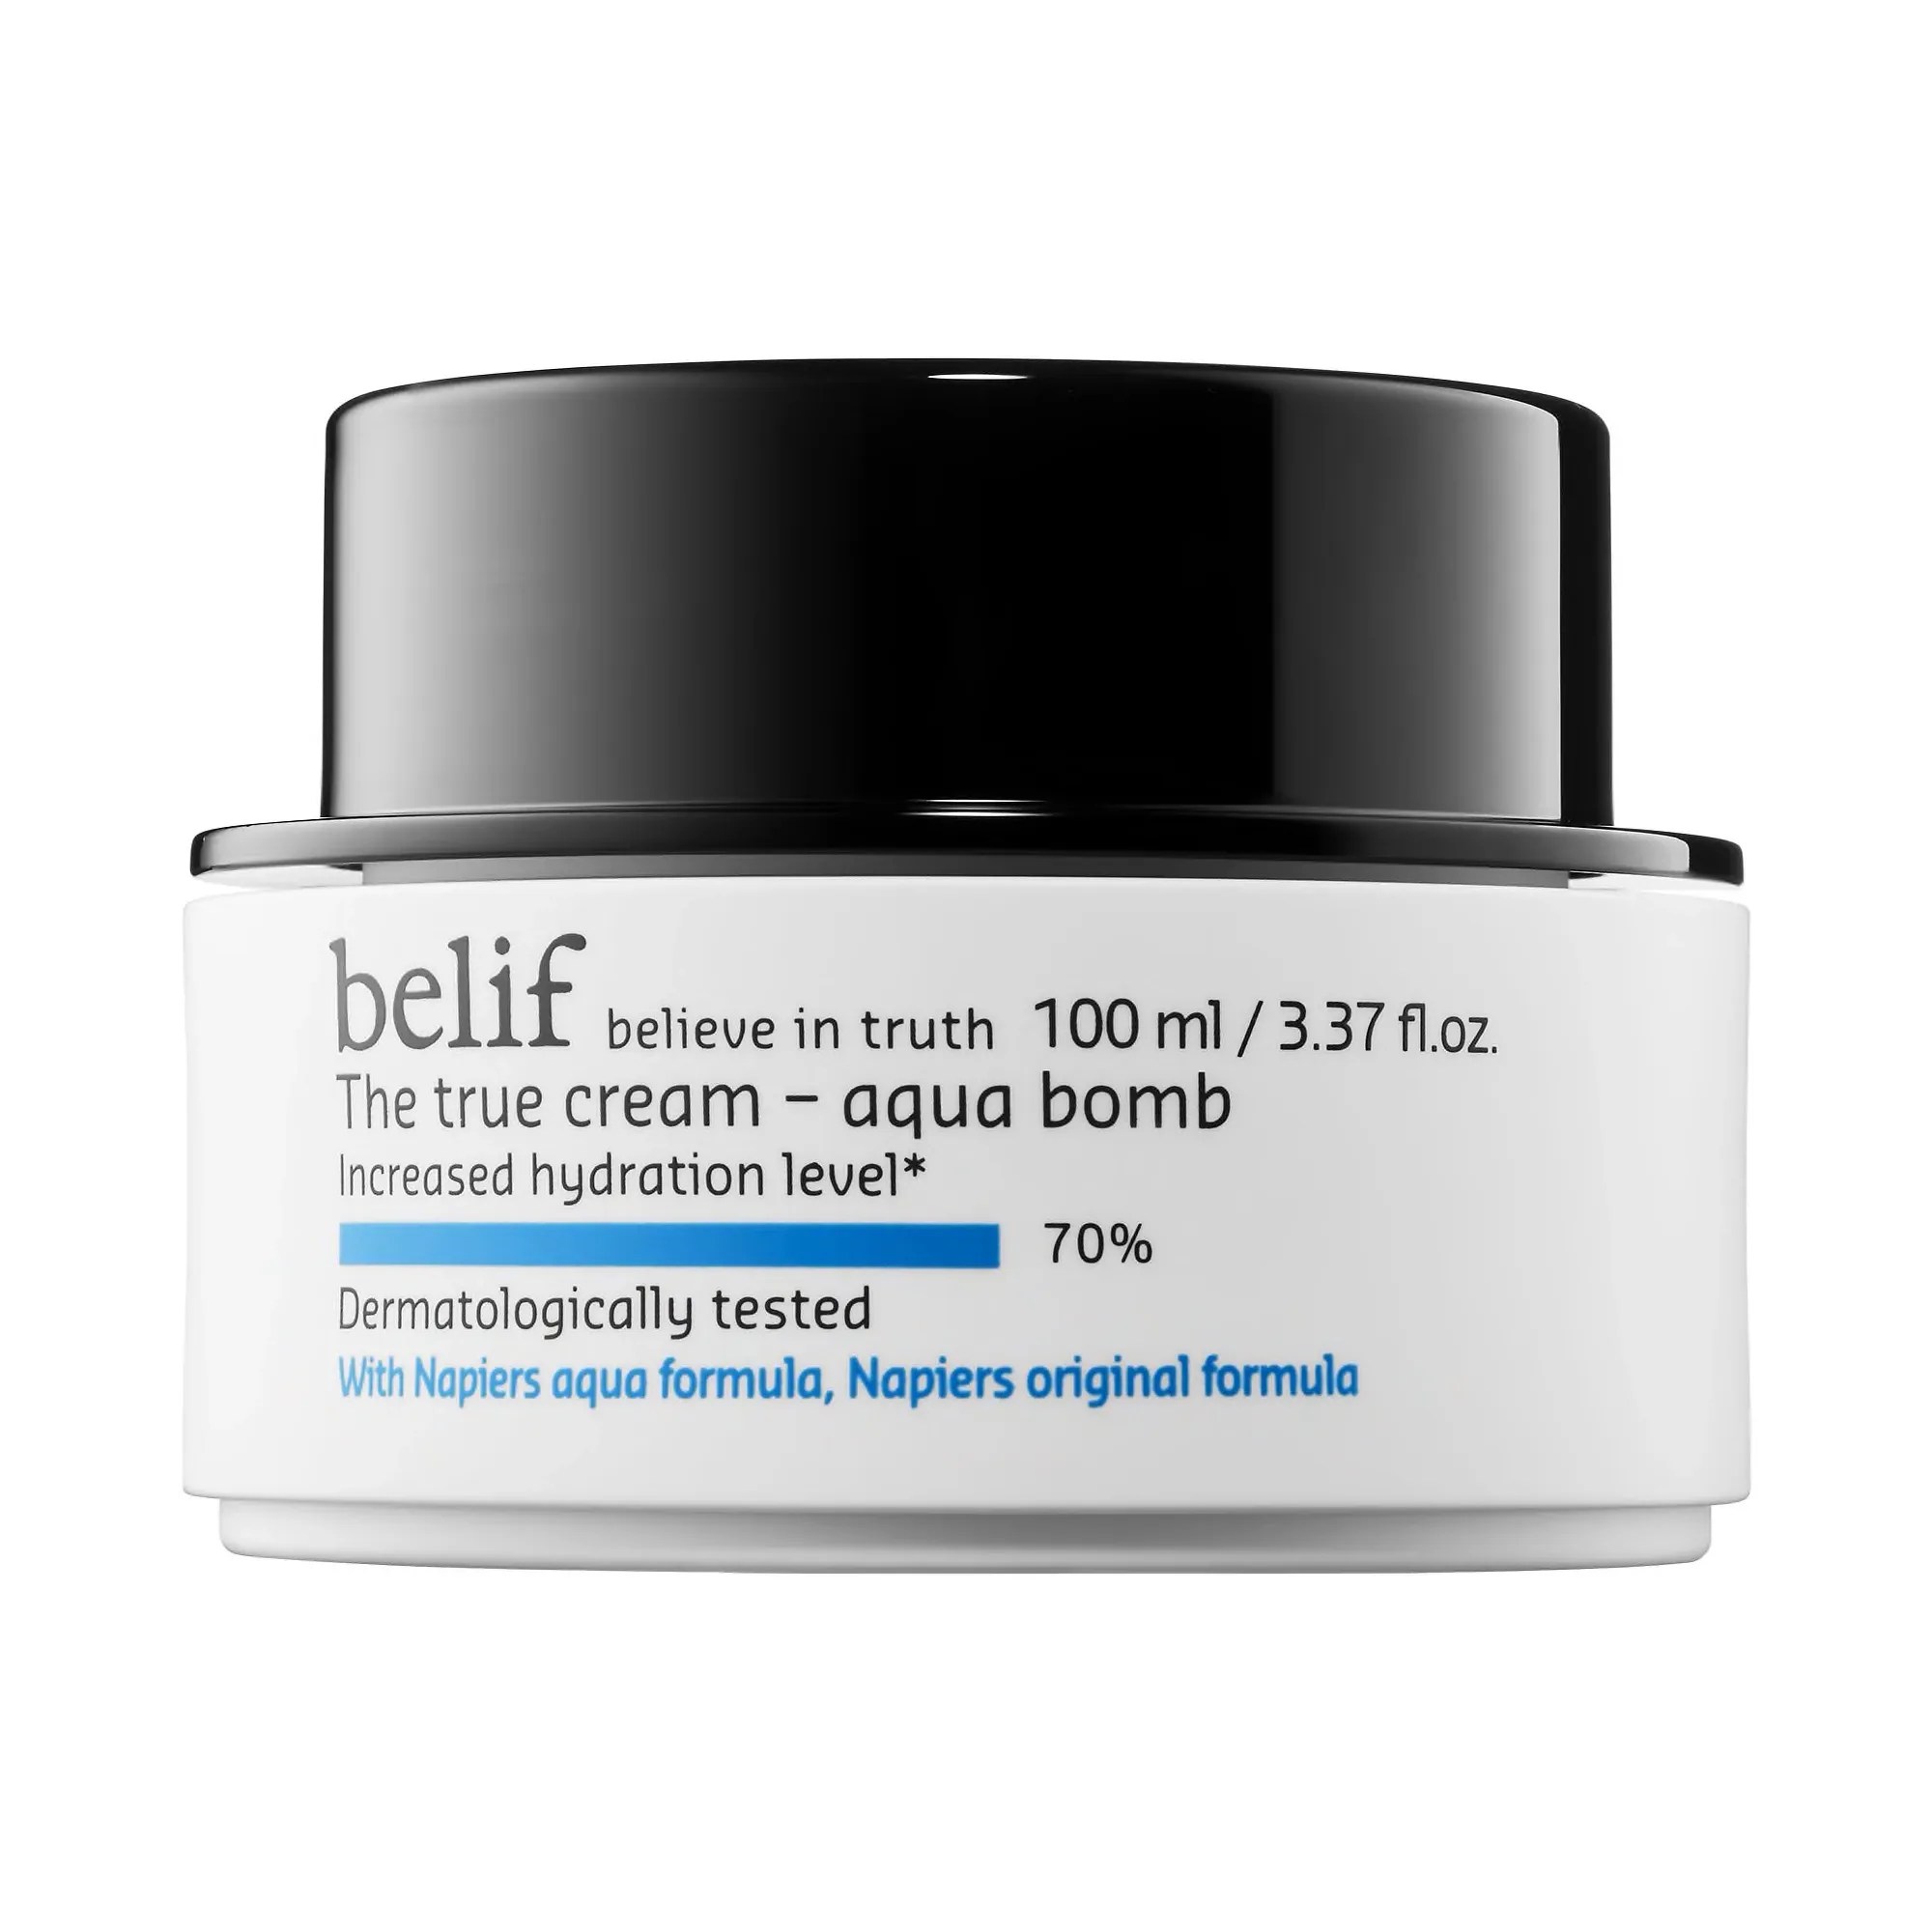 Belif, The True Cream Aqua Bomb (Source: www.belifusa.com)